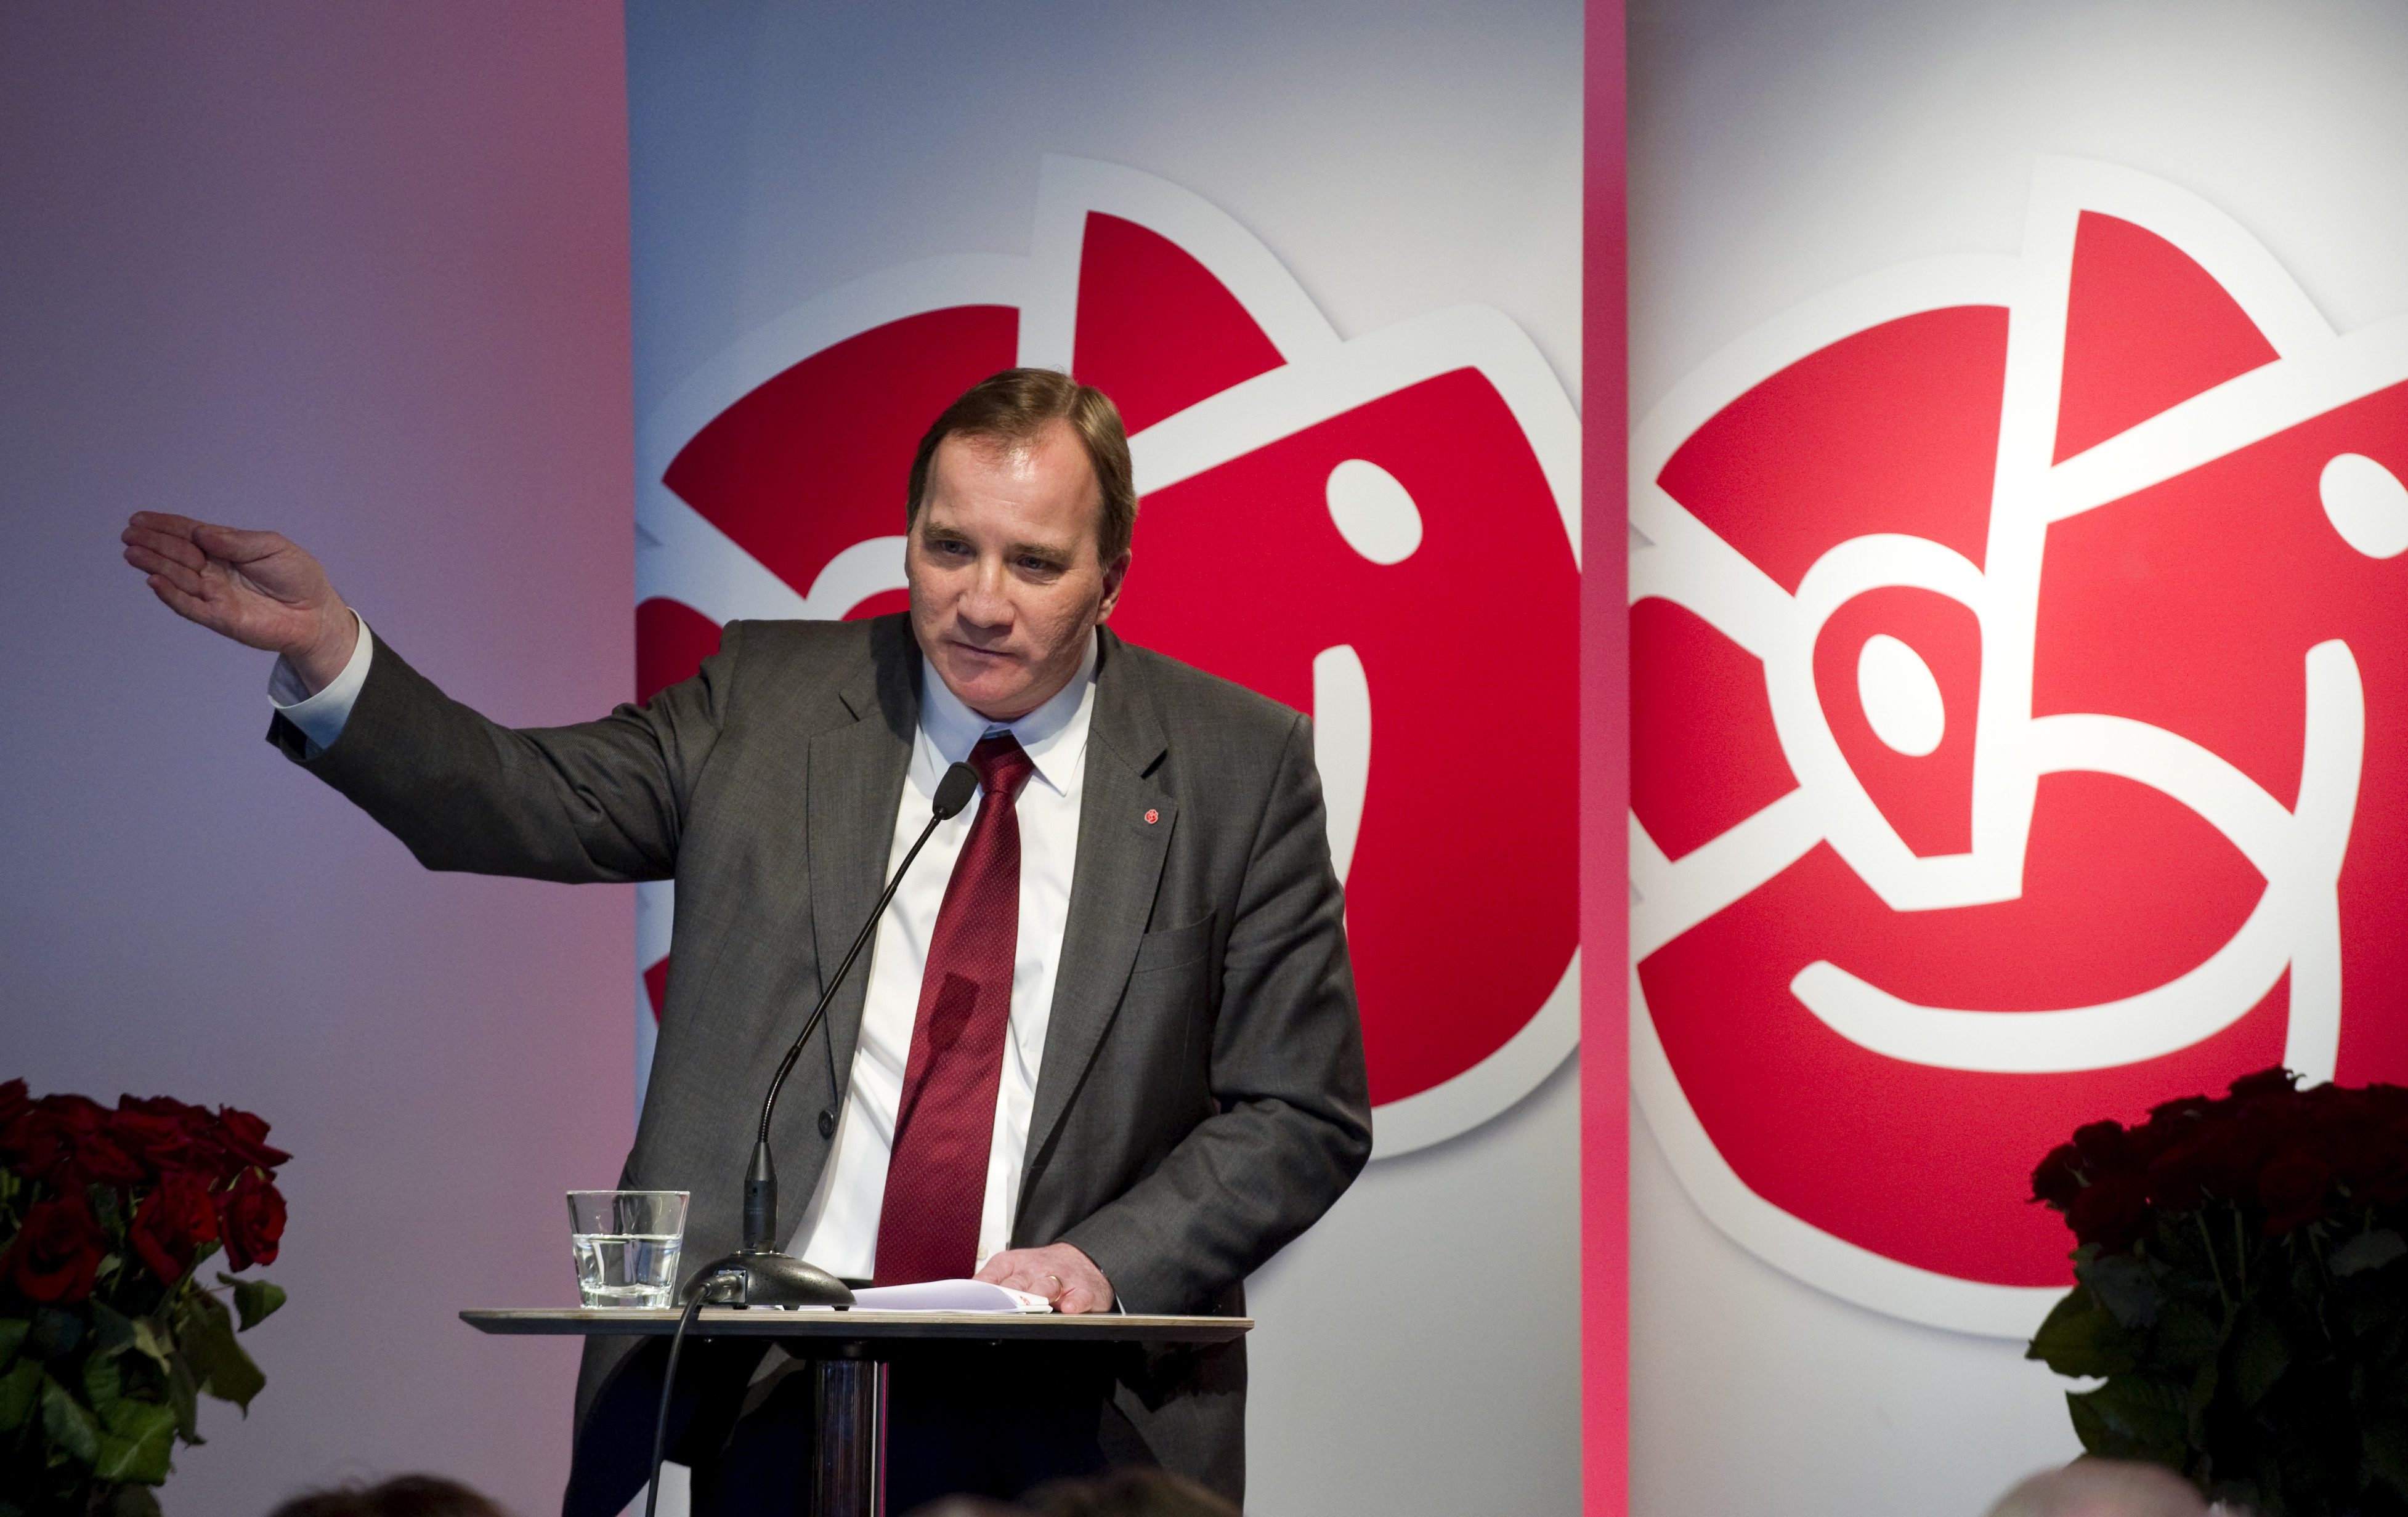 Snart måste nye ledaren Stefan Löfven peka ut en ny väg för Socialdemokraterna - innan partiets stöd minskar ännu mer.